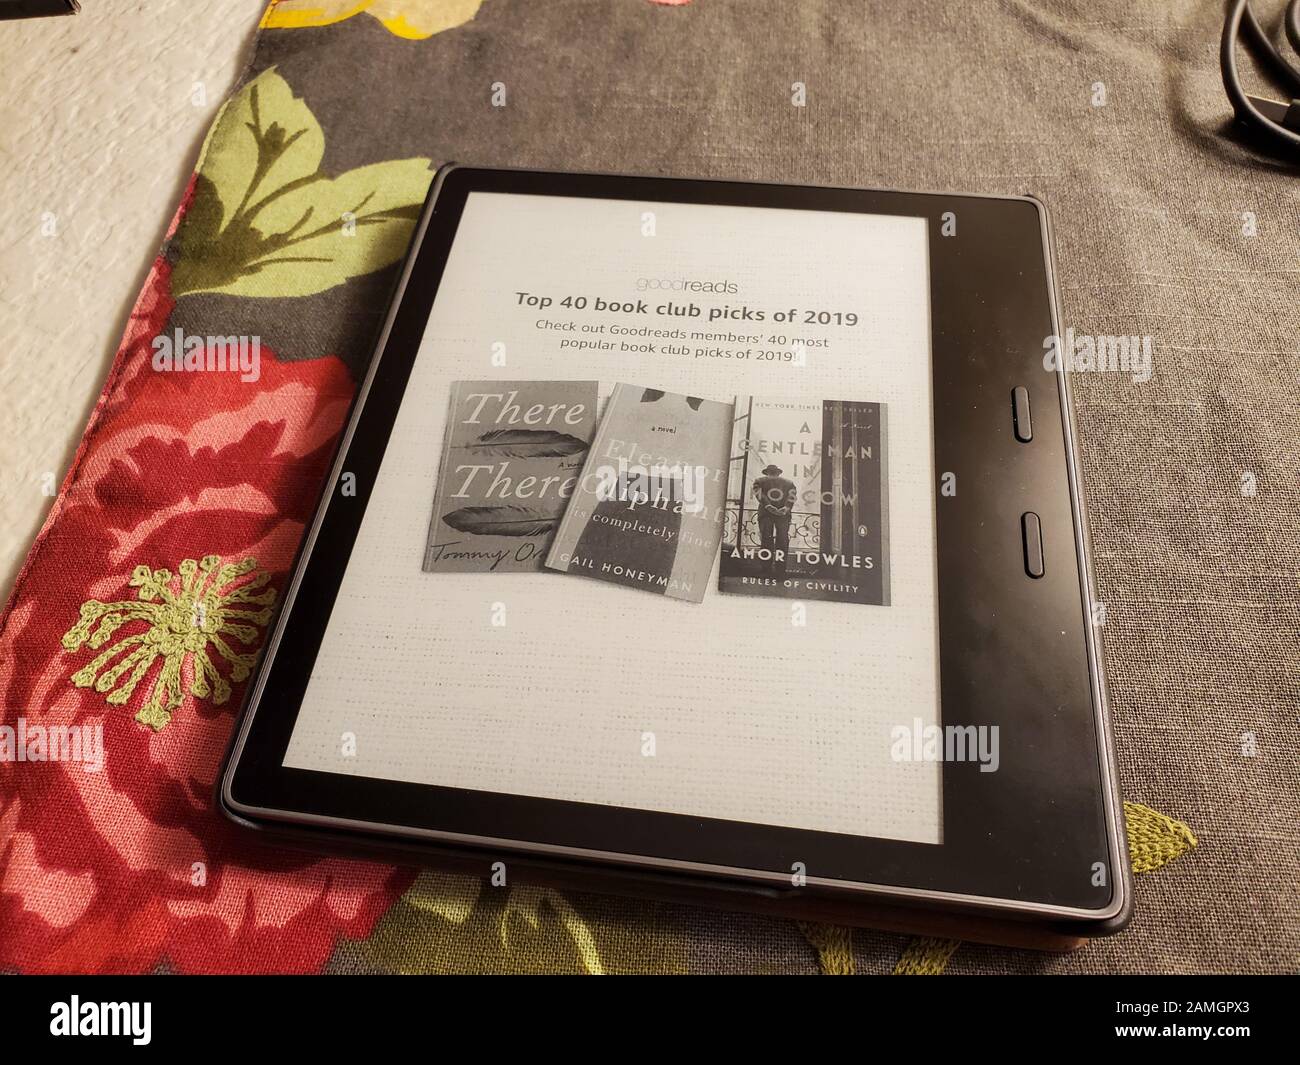 Primer plano de la última generación de lectores de libros Amazon Kindle  Oasis con funda de cuero sobre tela con estampado floral, San Ramon,  California, 2 de enero de 2020 Fotografía de